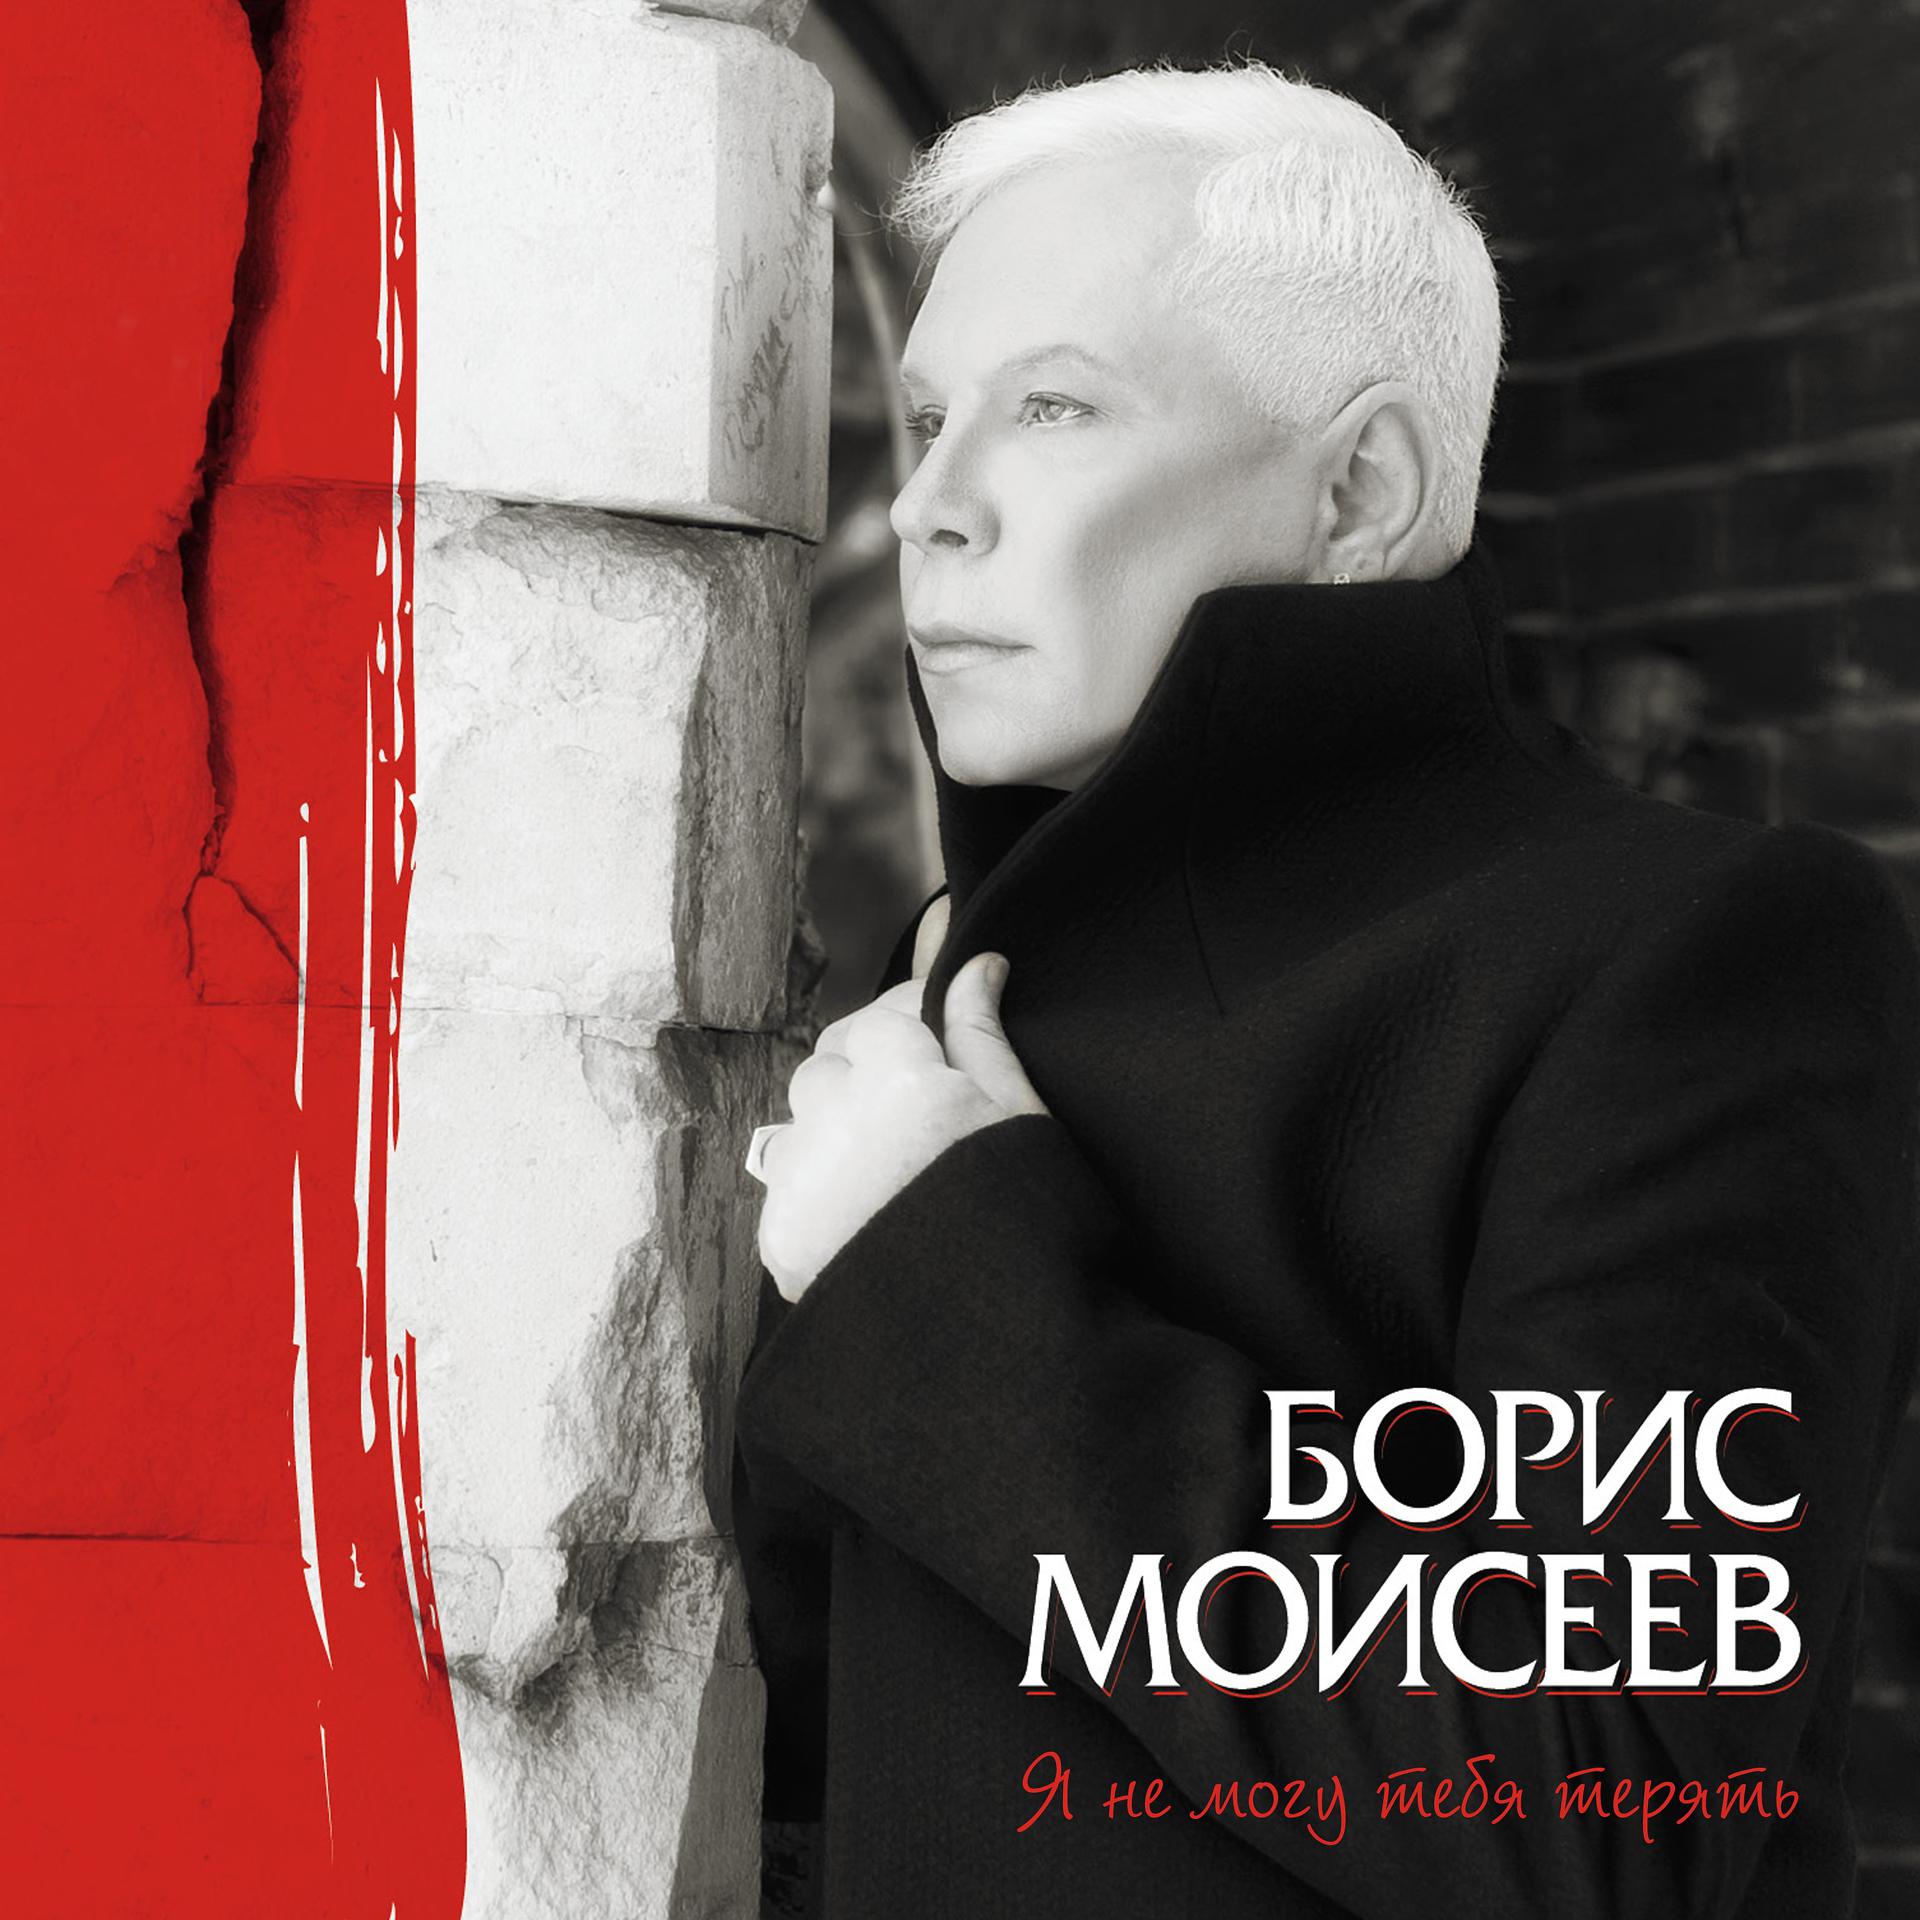 Постер к треку Борис Моисеев - Всех надо прощать